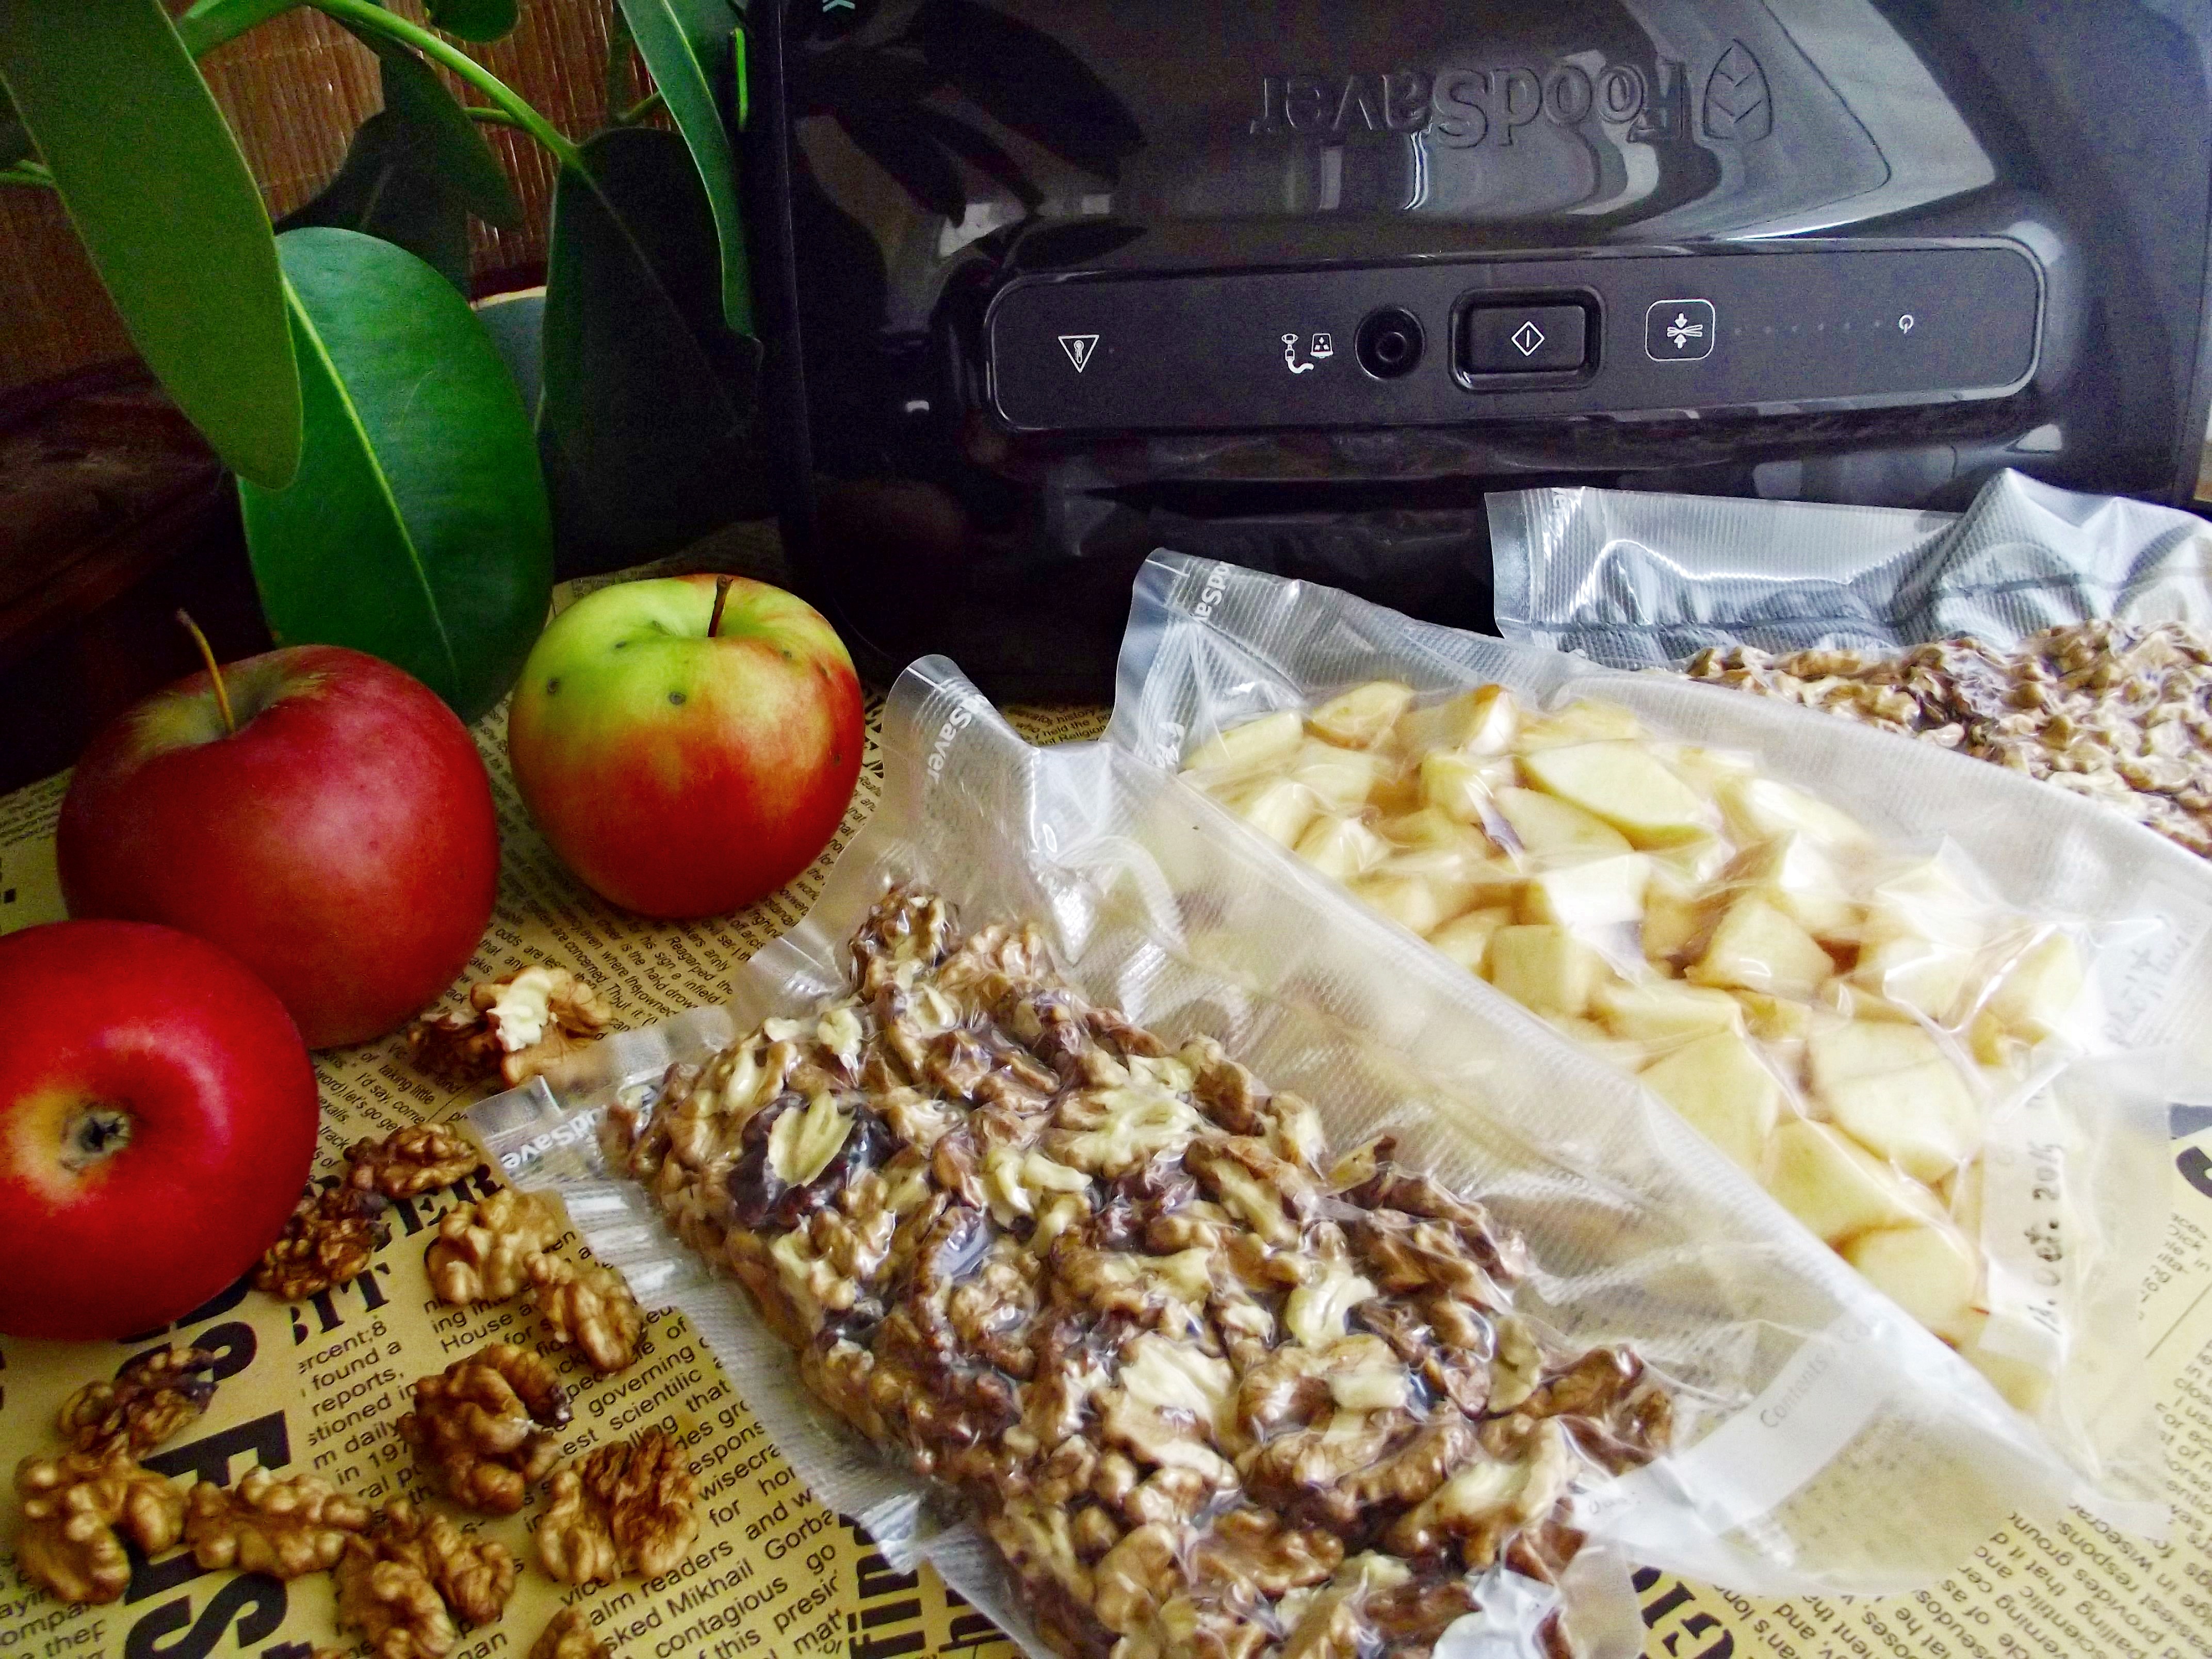 Pastrarea nucilor si merelor pentru prajituri, cu ajutorul FoodSaver